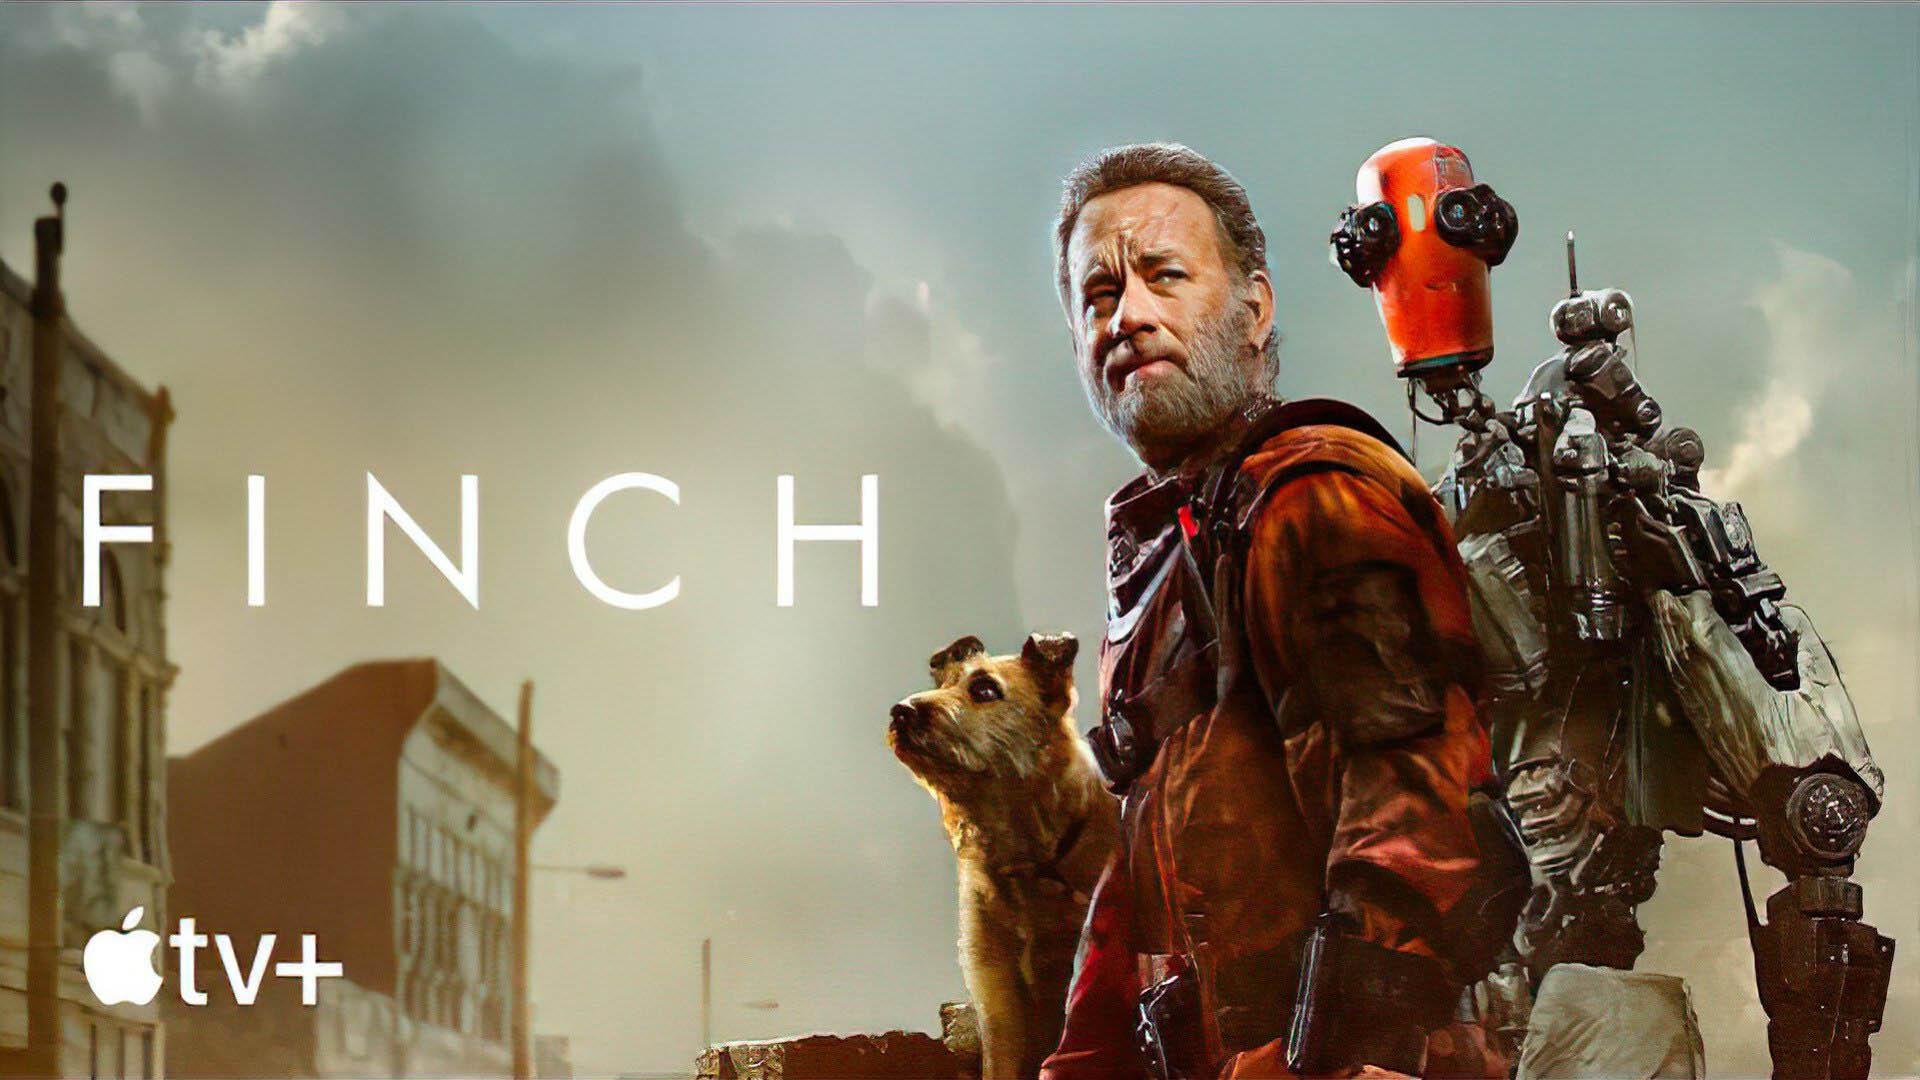 تام هنکس به همراه ربات و سگ در فیلم Finch